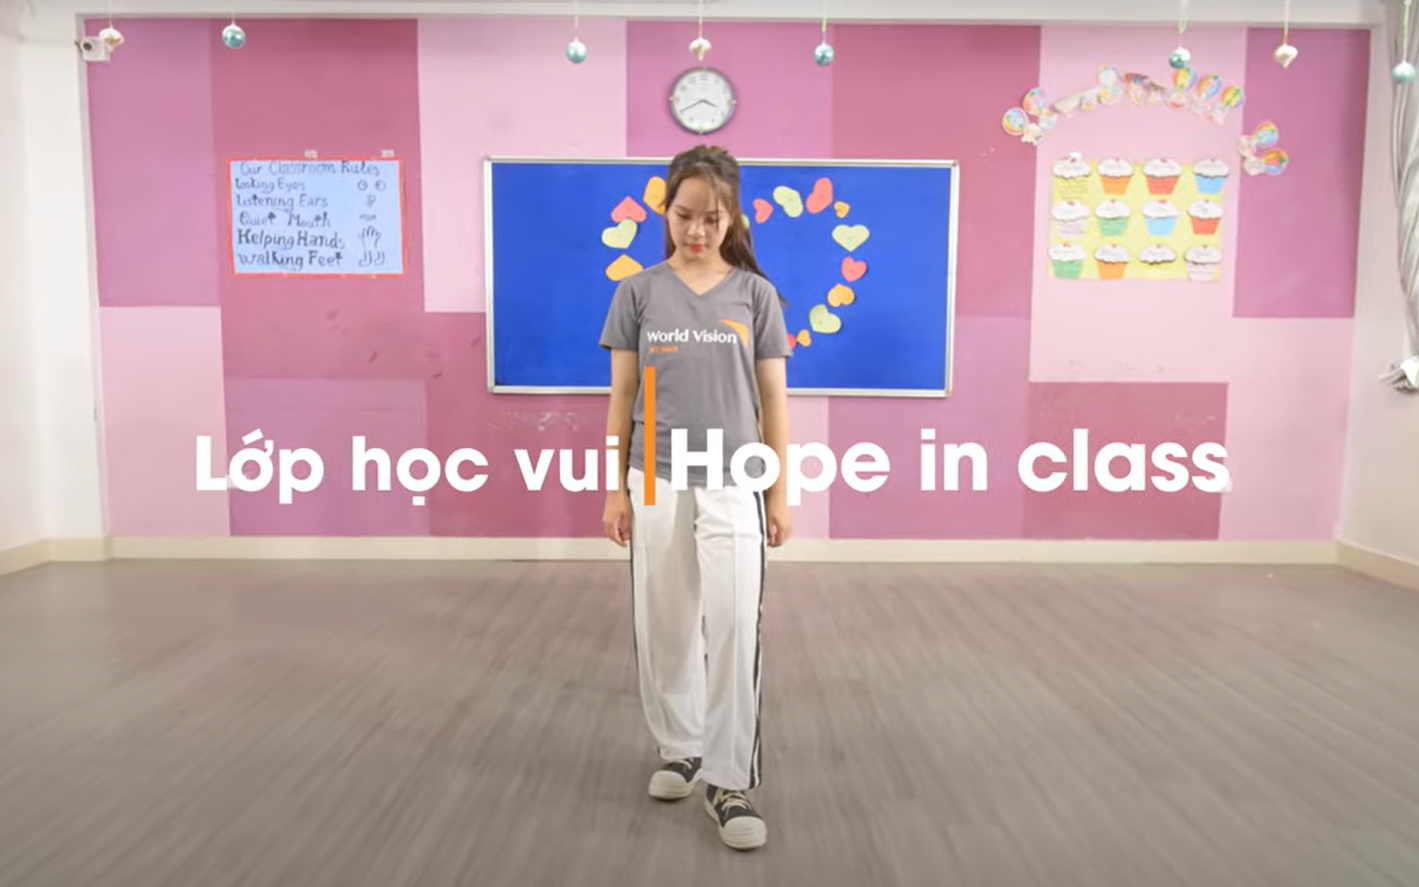 Cùng Hoa hậu Ngọc Hân và MC Phan Anh tham gia điệu nhảy ý nghĩa “Vũ điệu Lớp học vui”